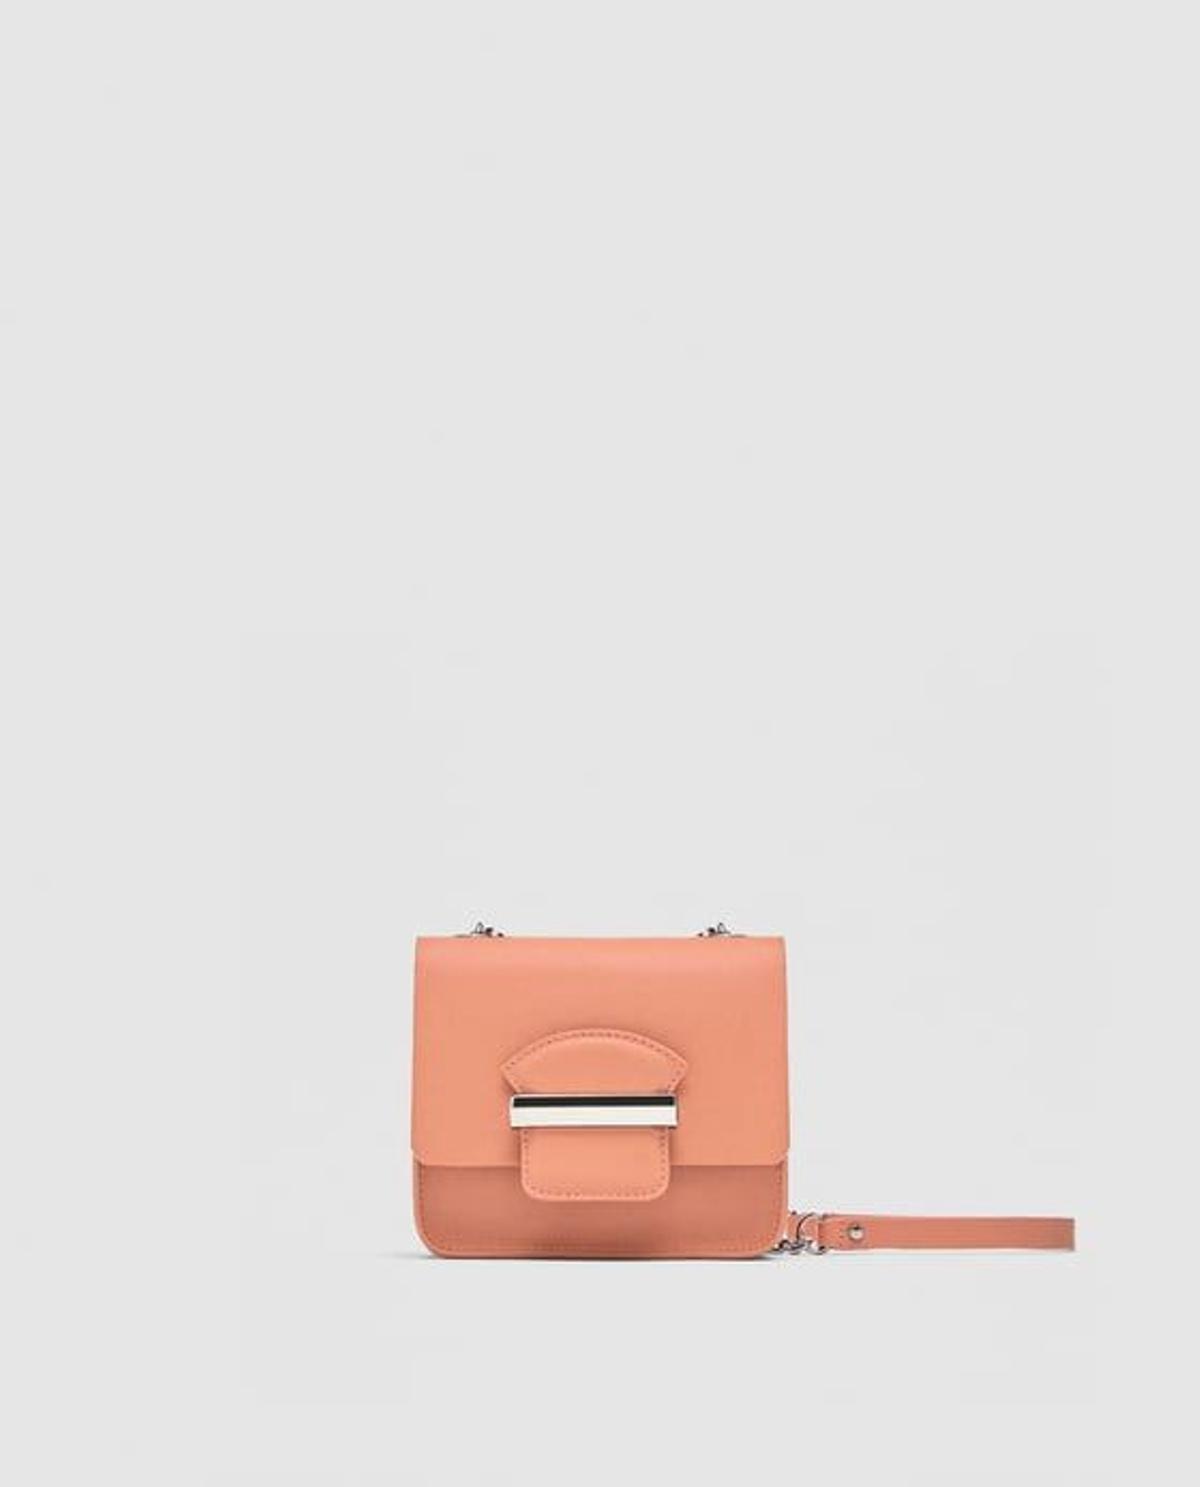 Bolso rosa con cadena de Zara (Precio: 19,95 euros)